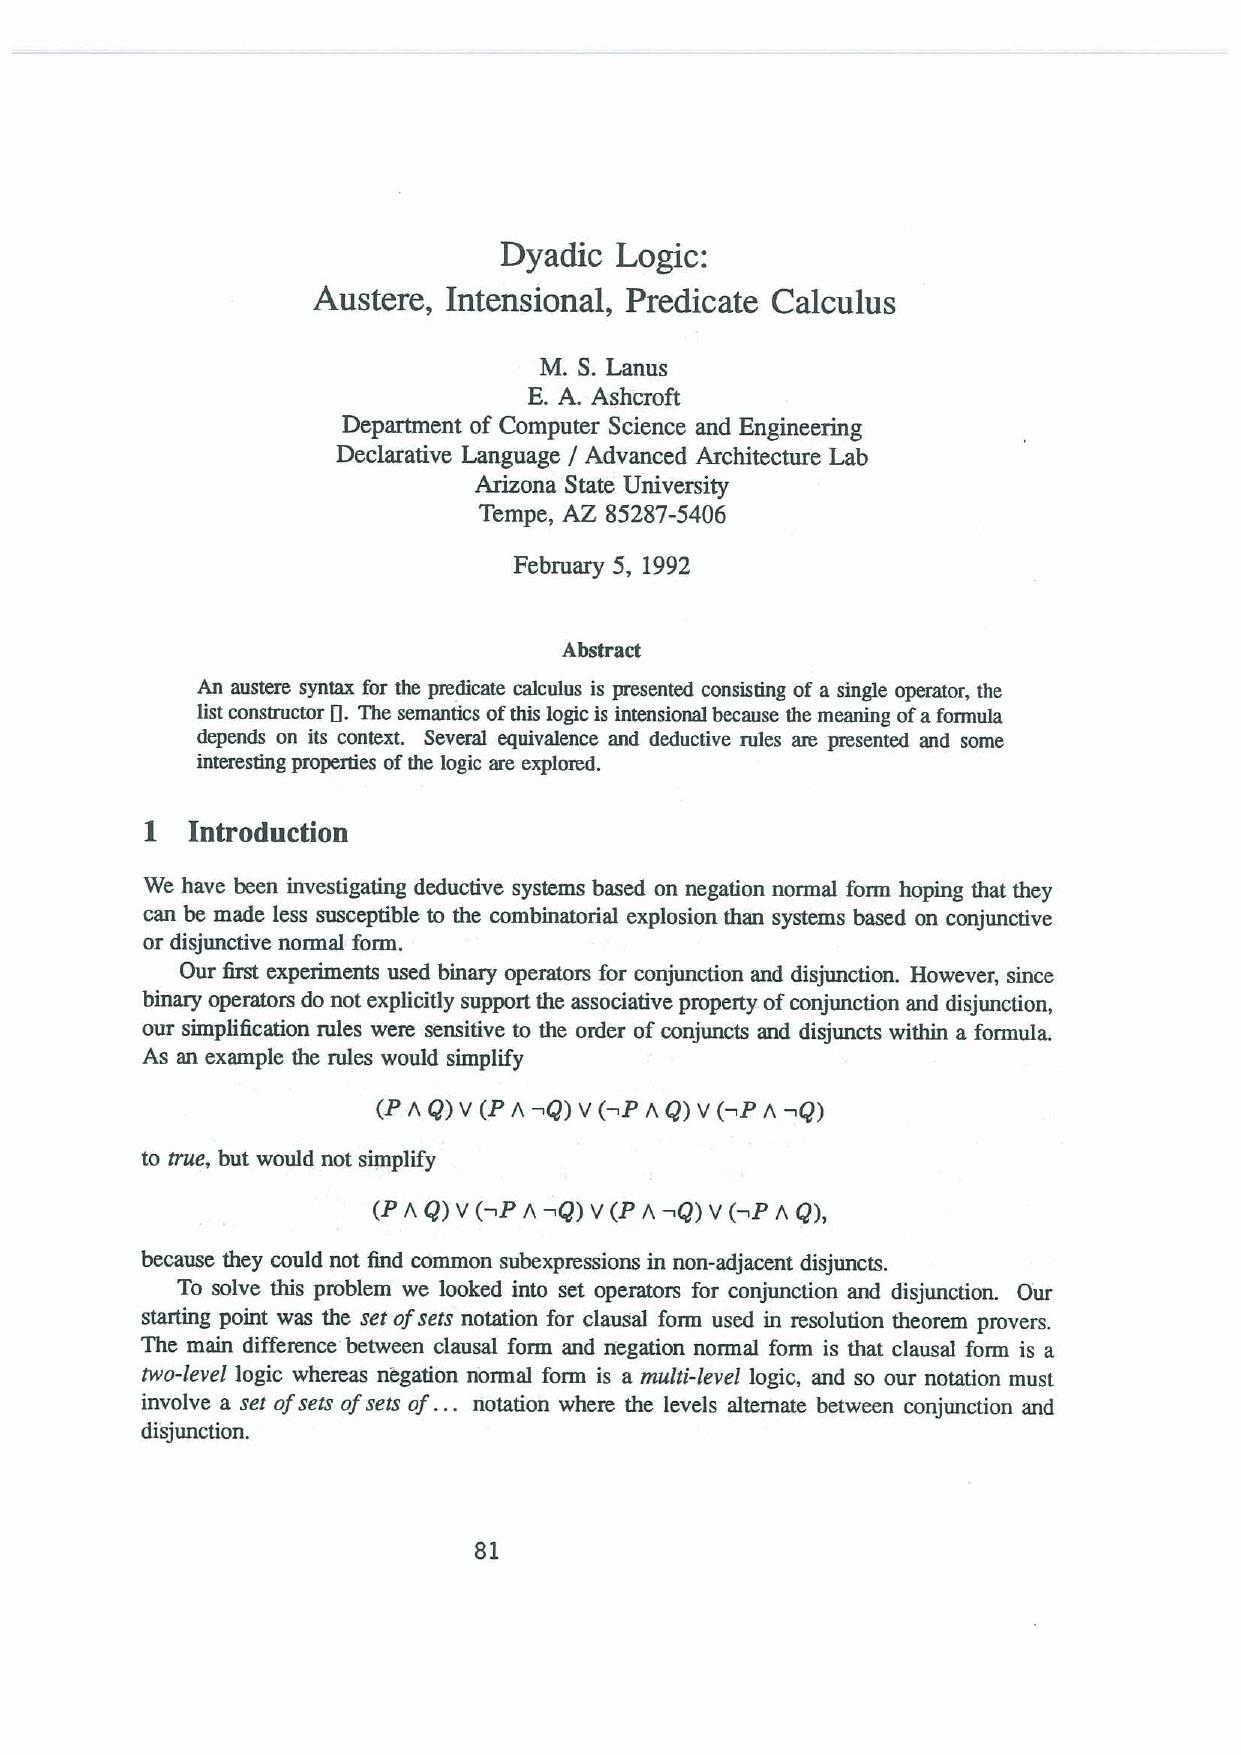 Dyadic Logic: Austere, Intensional, Predicate Calculus (1992) - Paper